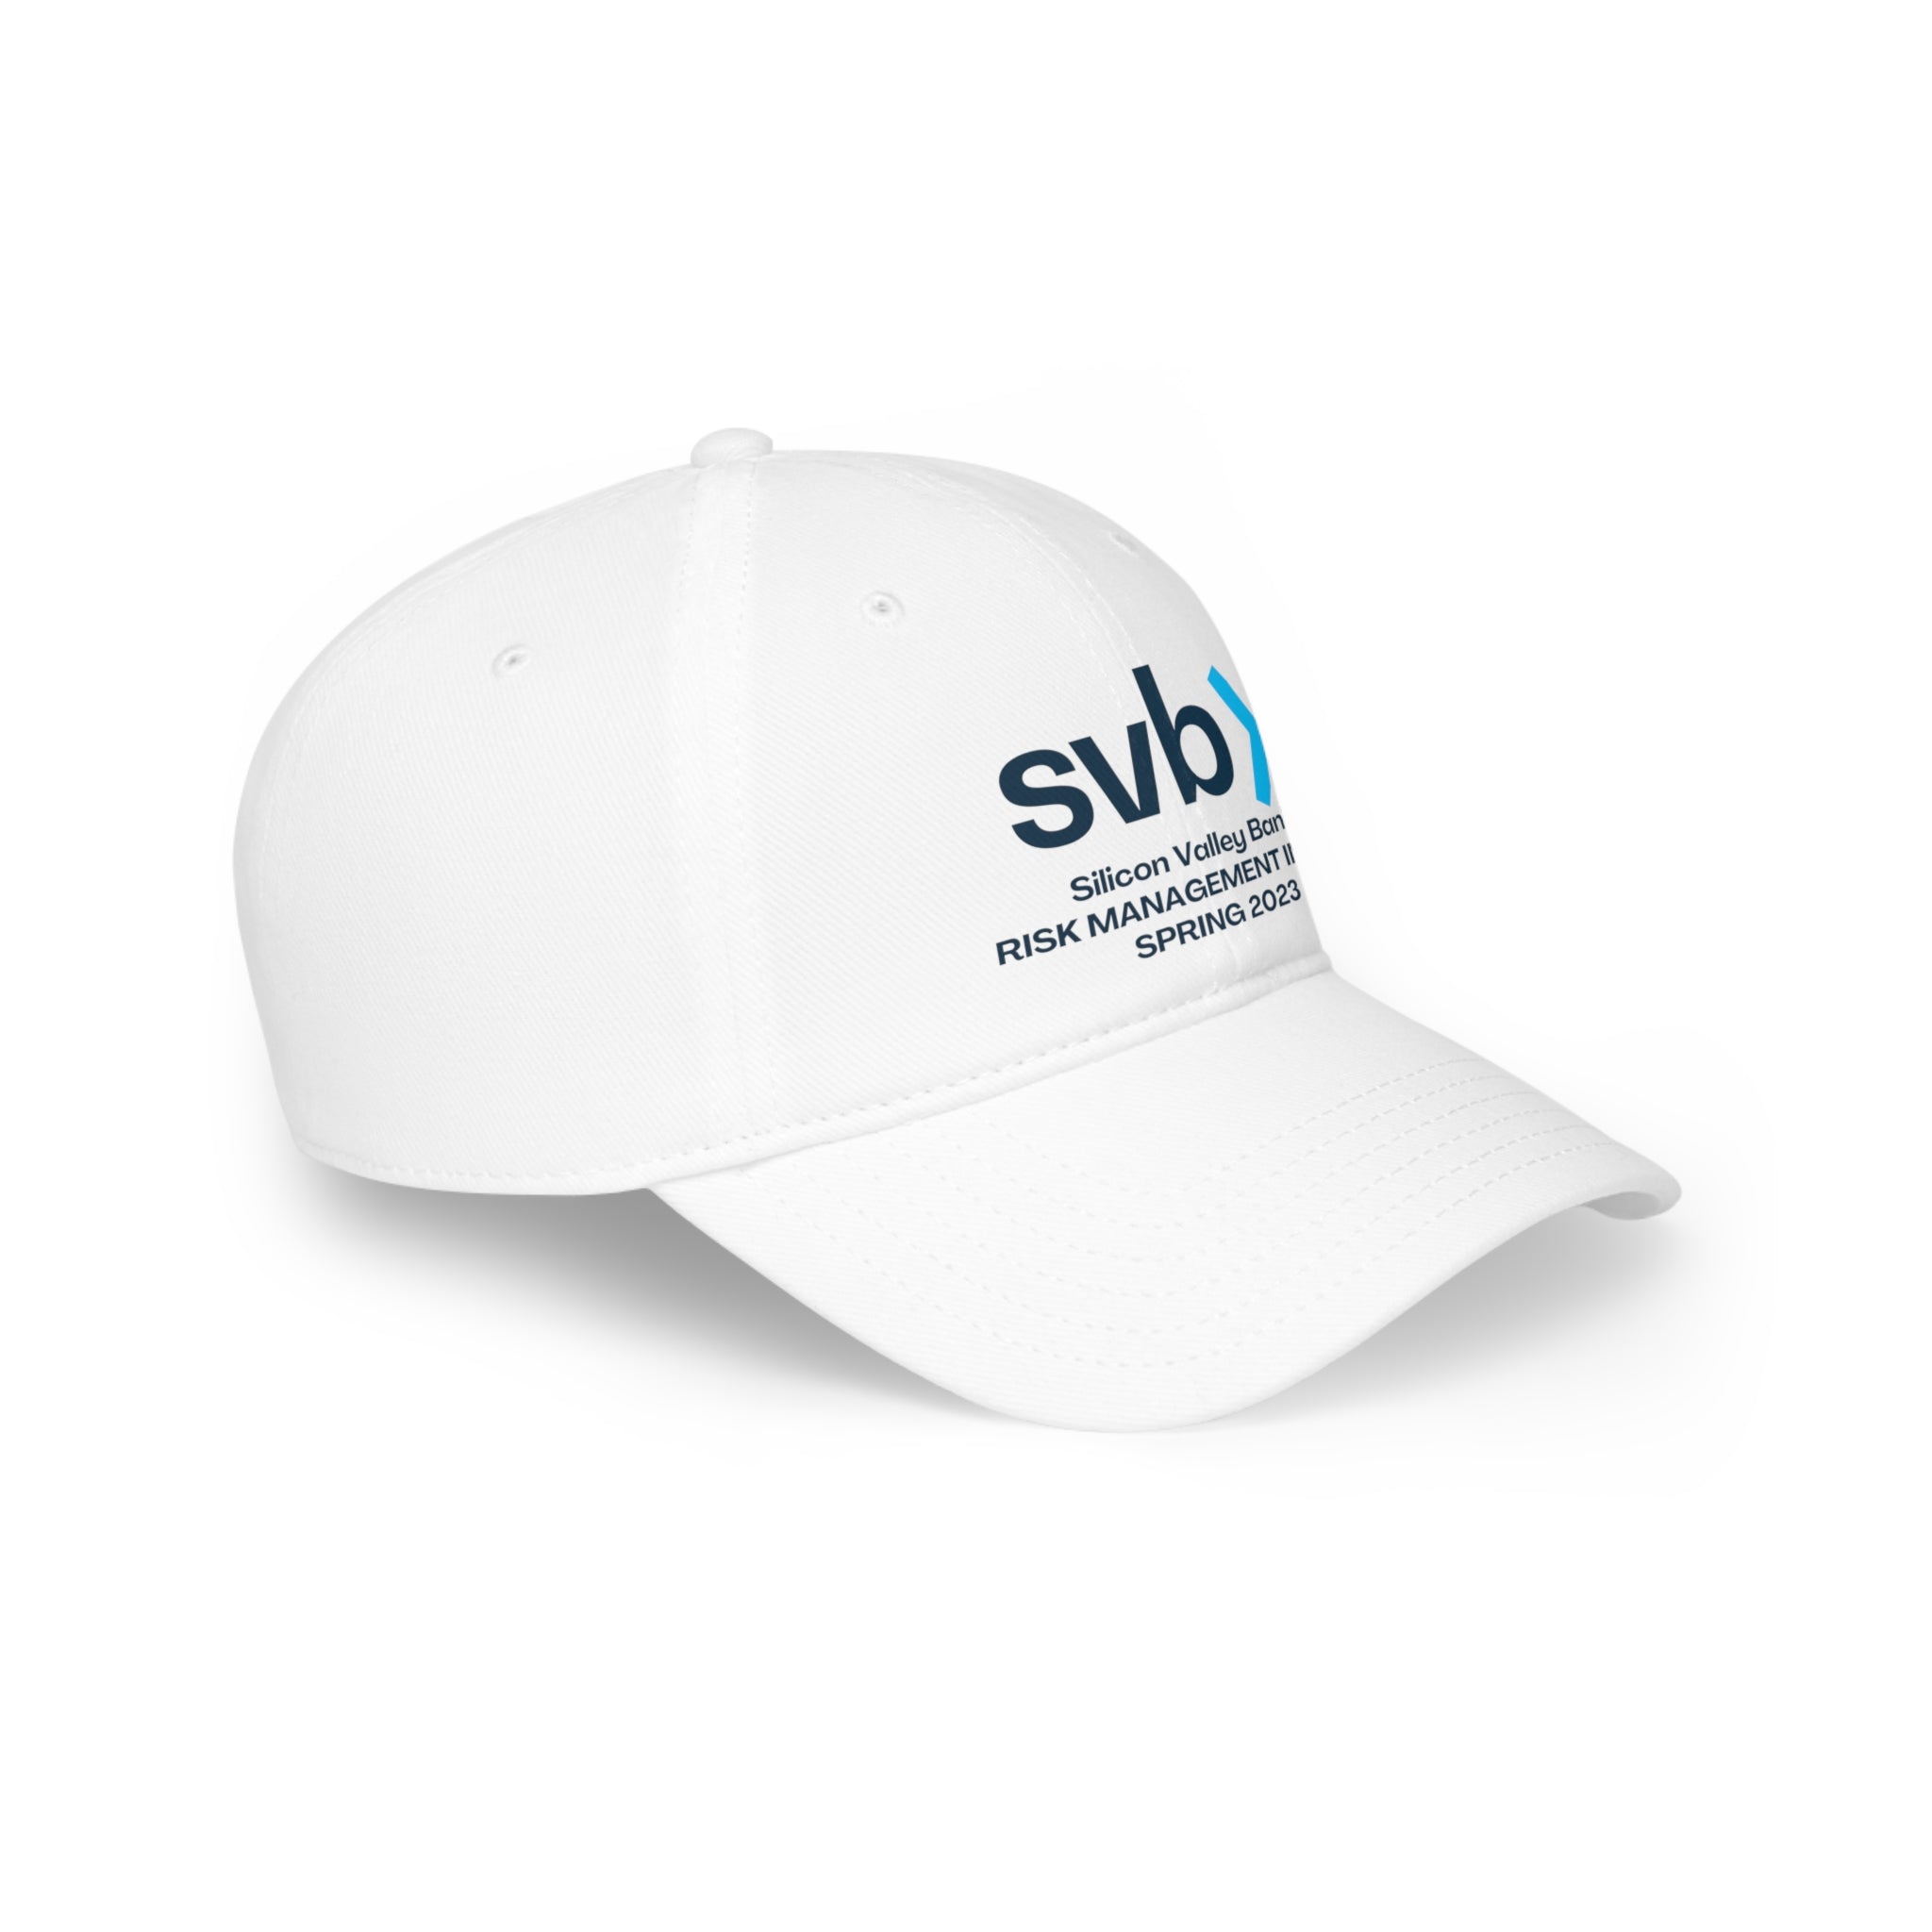 Silicon Valley Bank Risk Management Intern 2023 - Hat